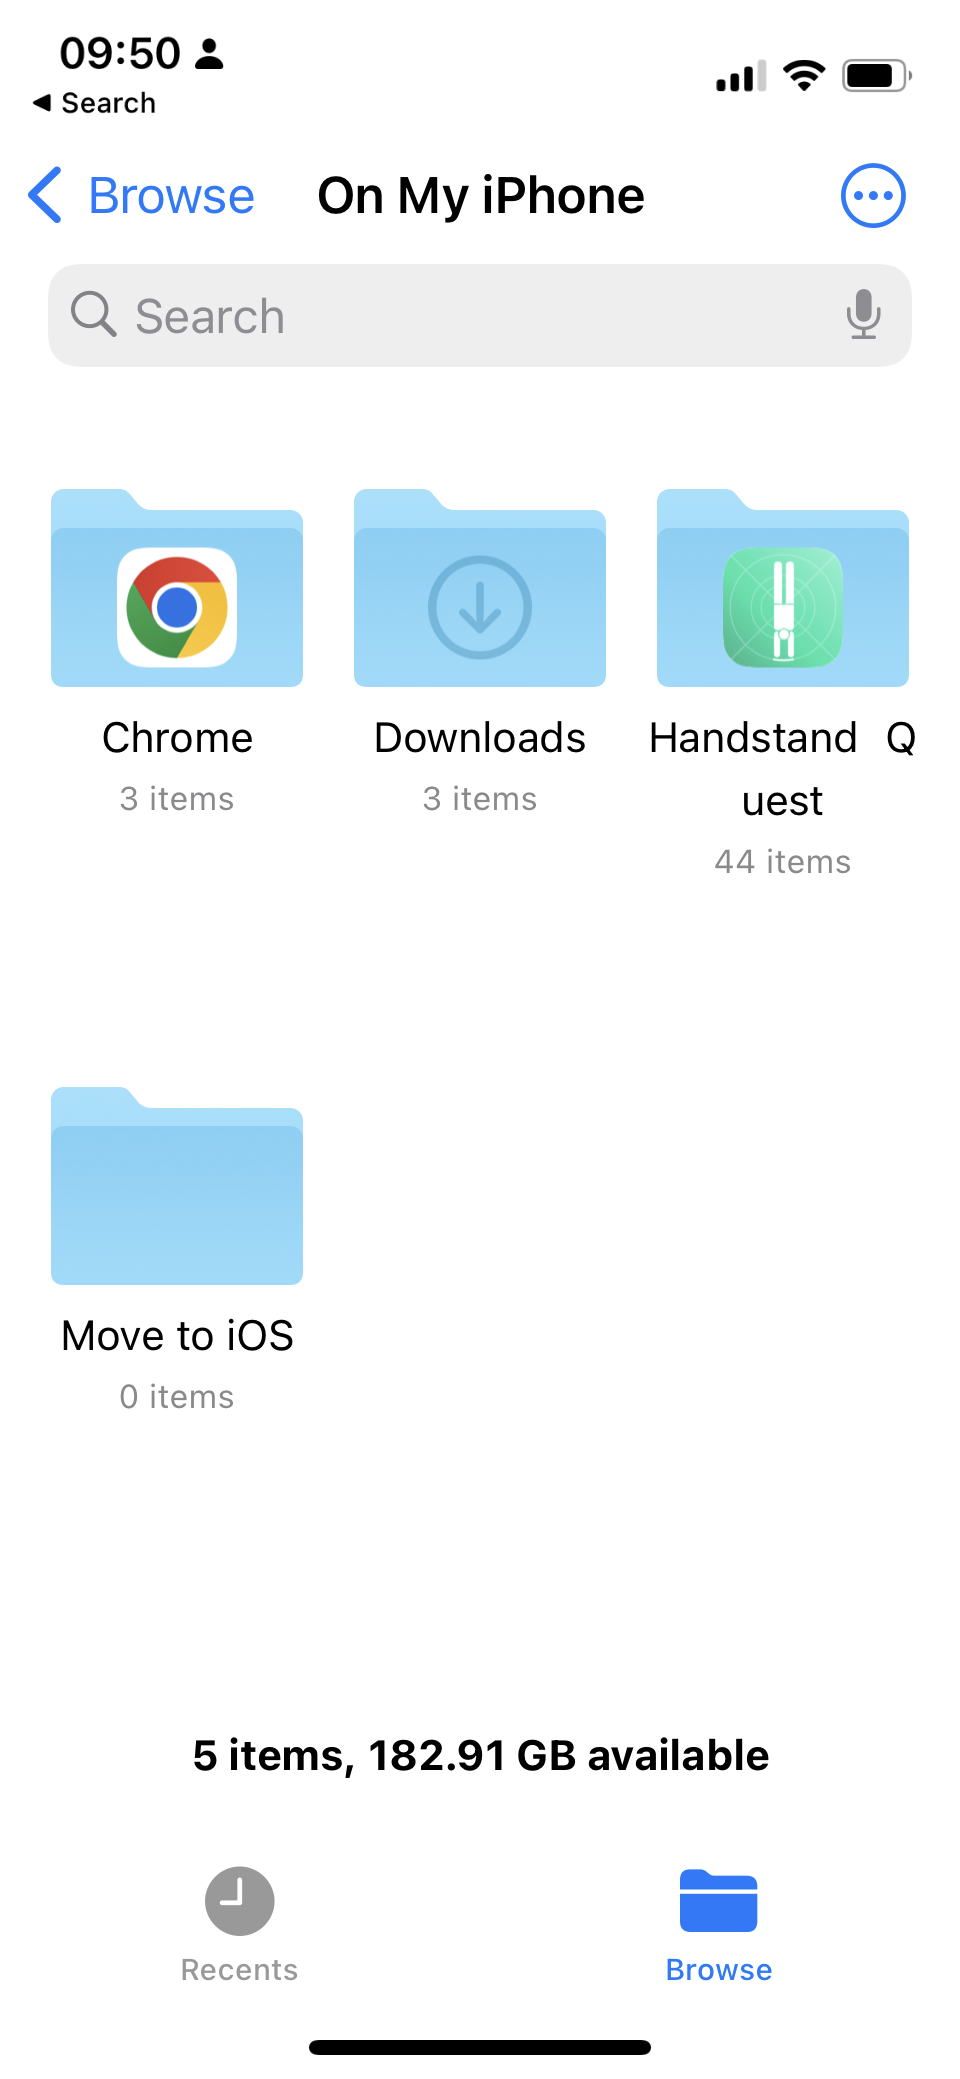 Handstand Quest Folder in Files App